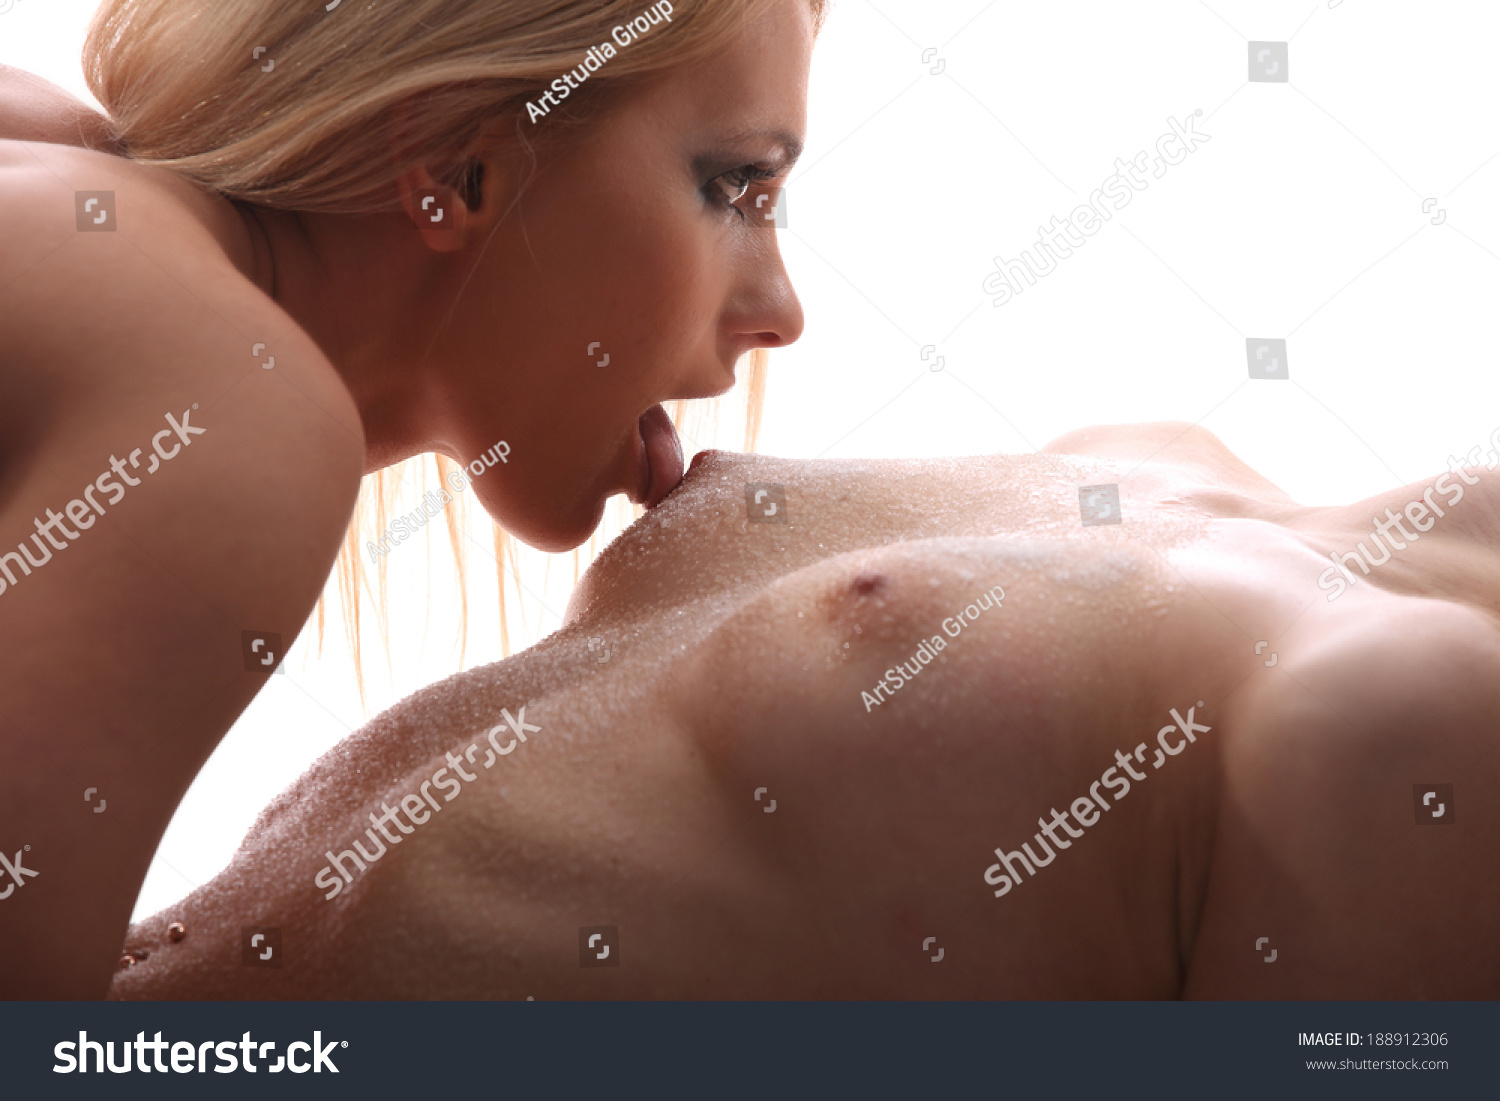 Naked Girls Posing Together